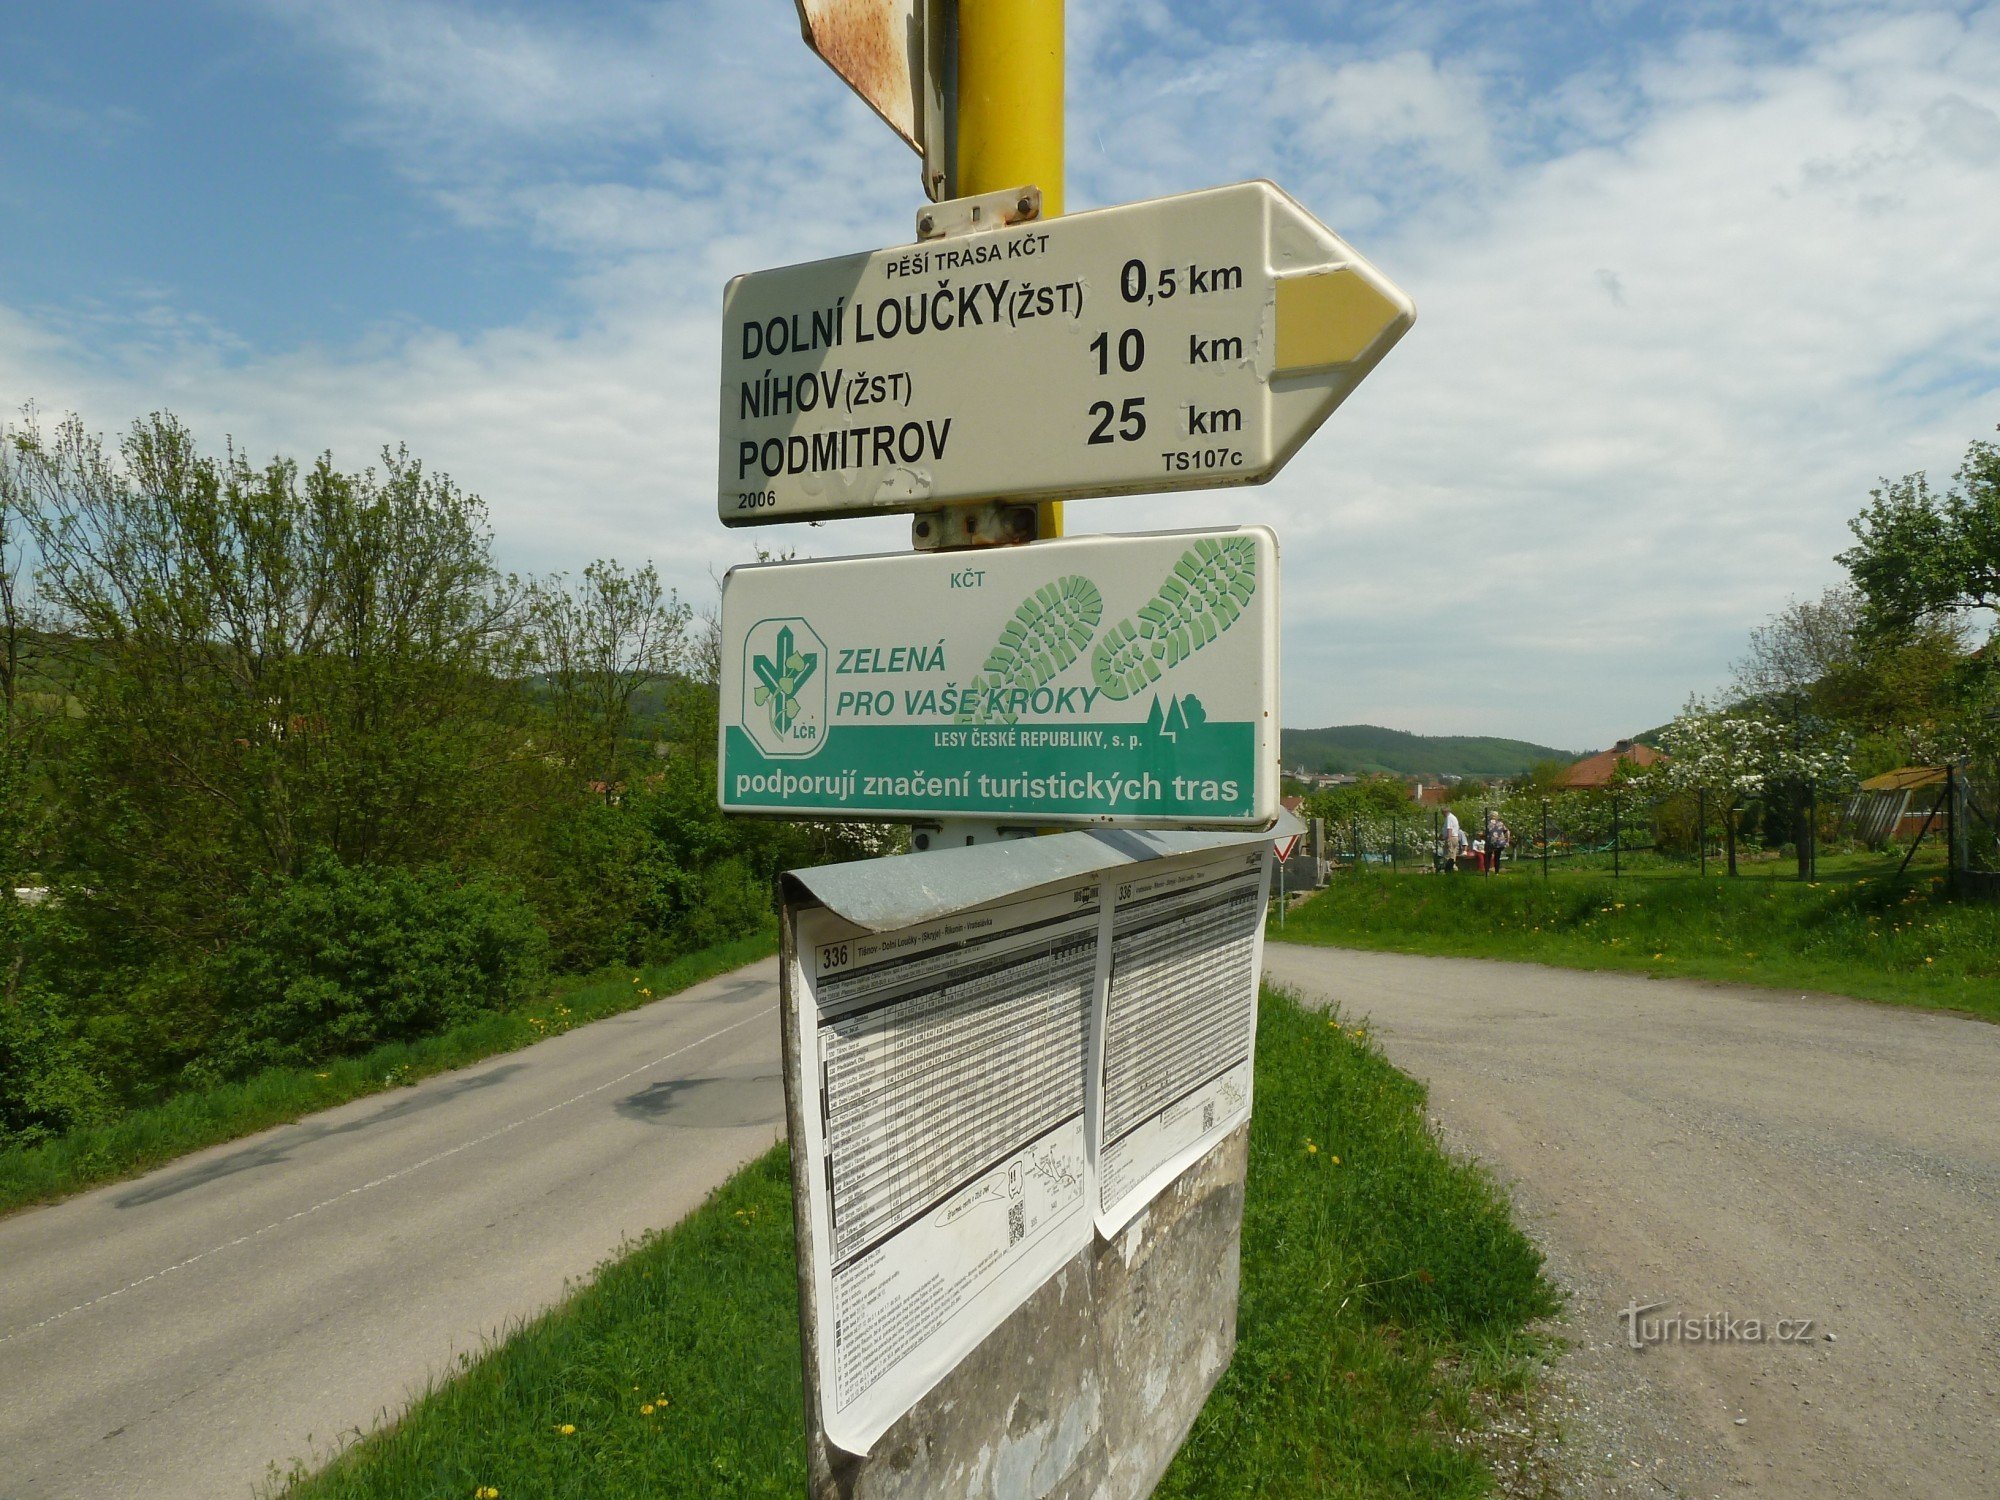 Dolní Loučky tourist junction (junction)